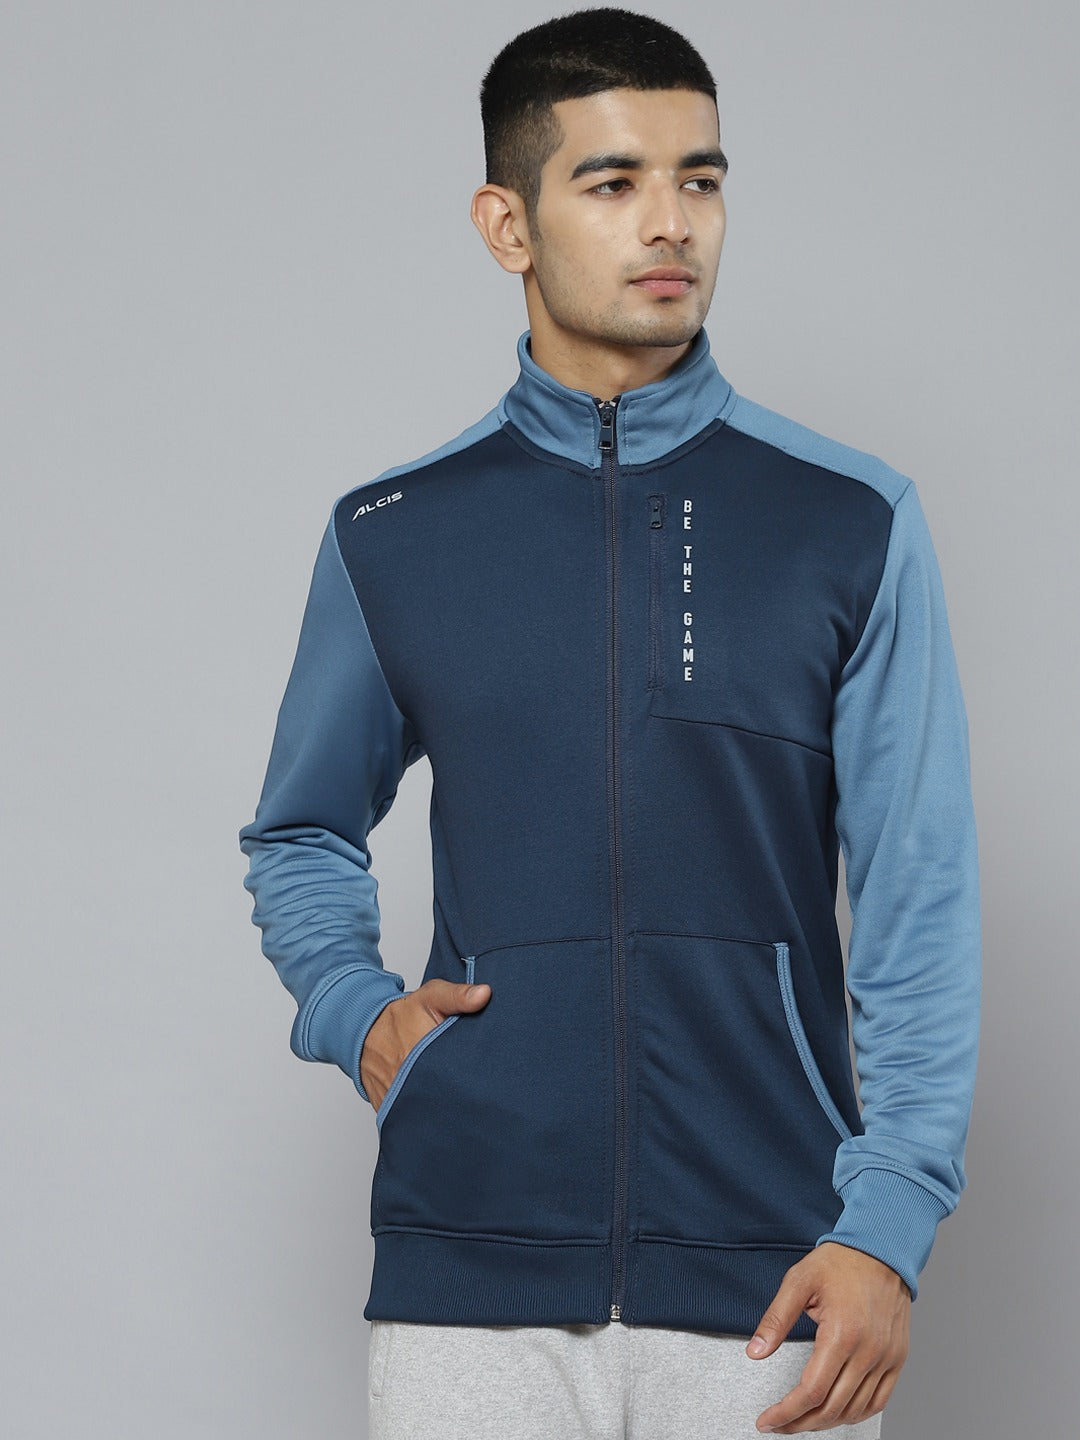 Alcis Men Blue Colourblocked Running Sporty Jacket